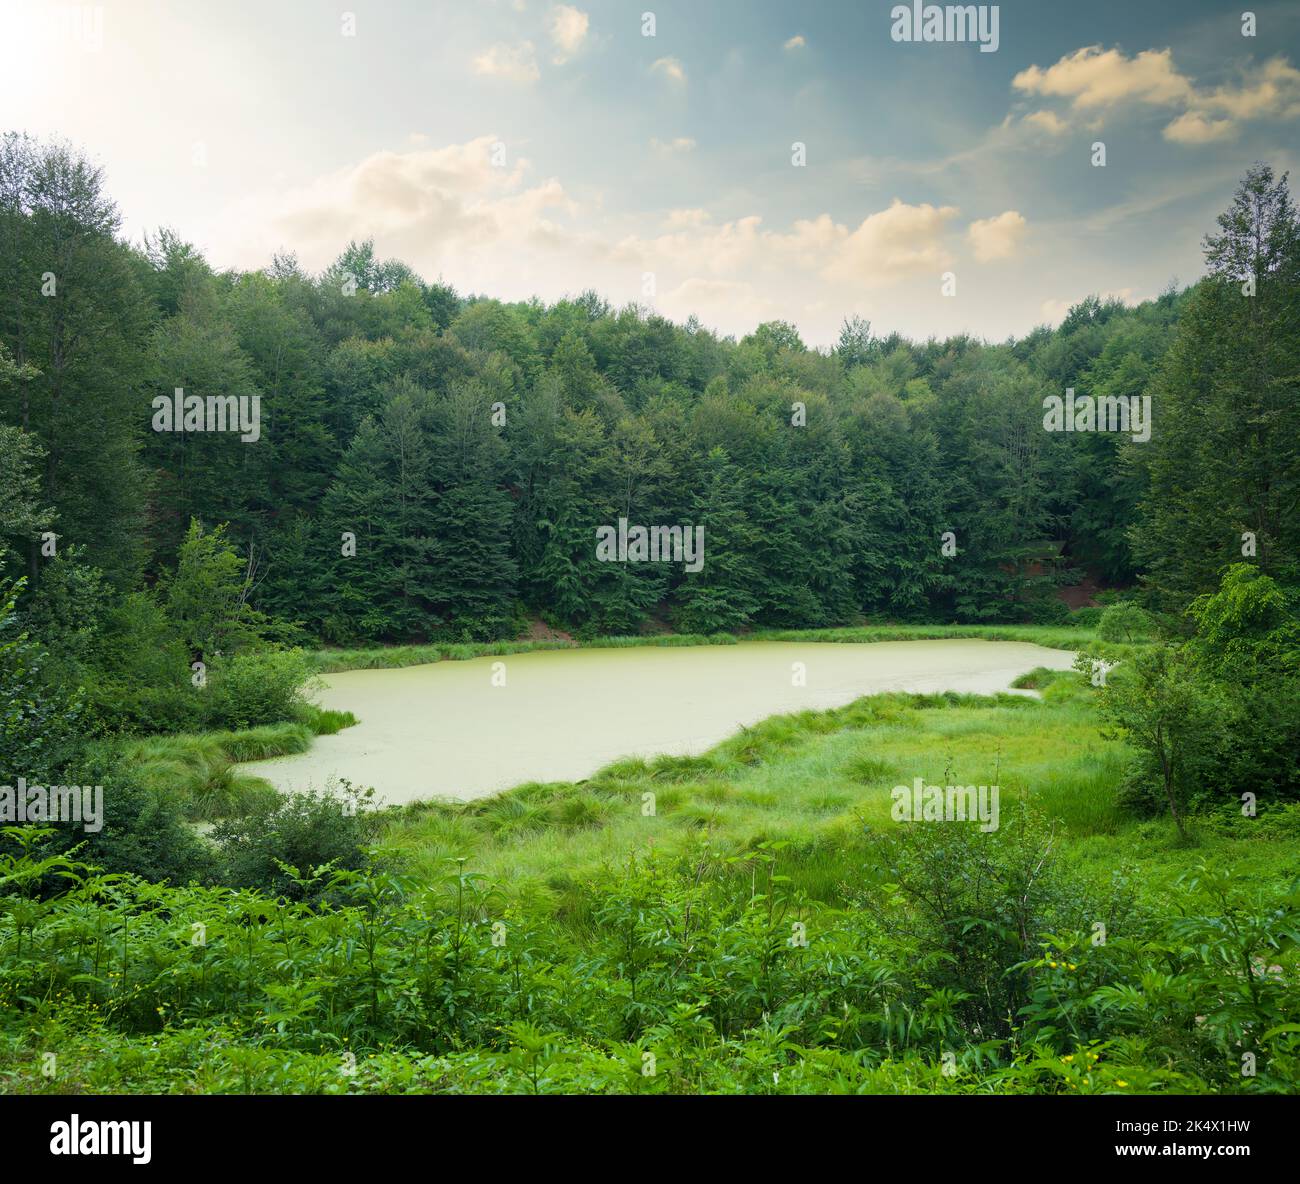 Ein kleiner See des Waldes. Grüne Bäume und ruhiger gelber See im Frühling Stockfoto